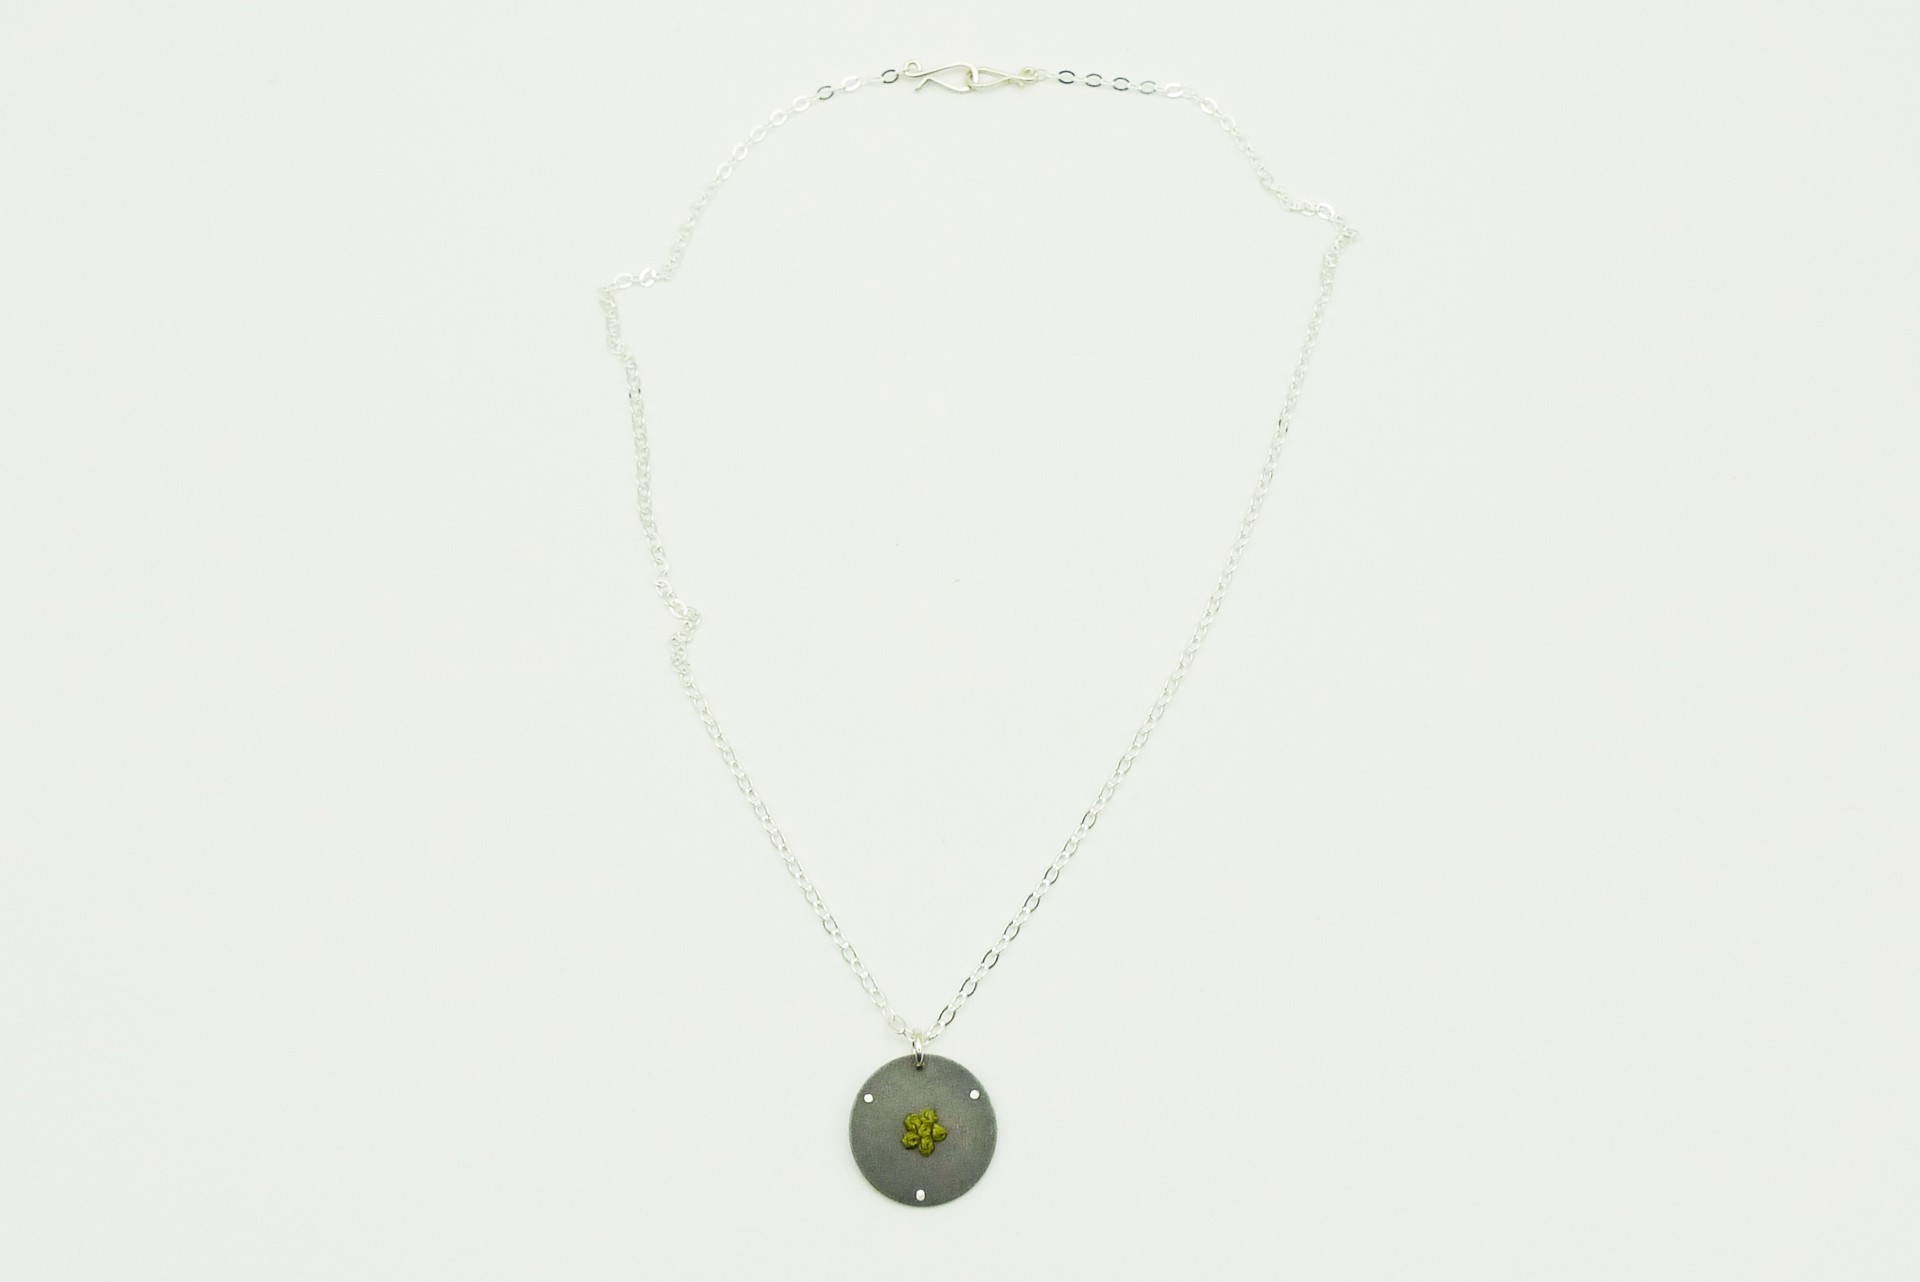 Sage Necklace by Erica Schlueter